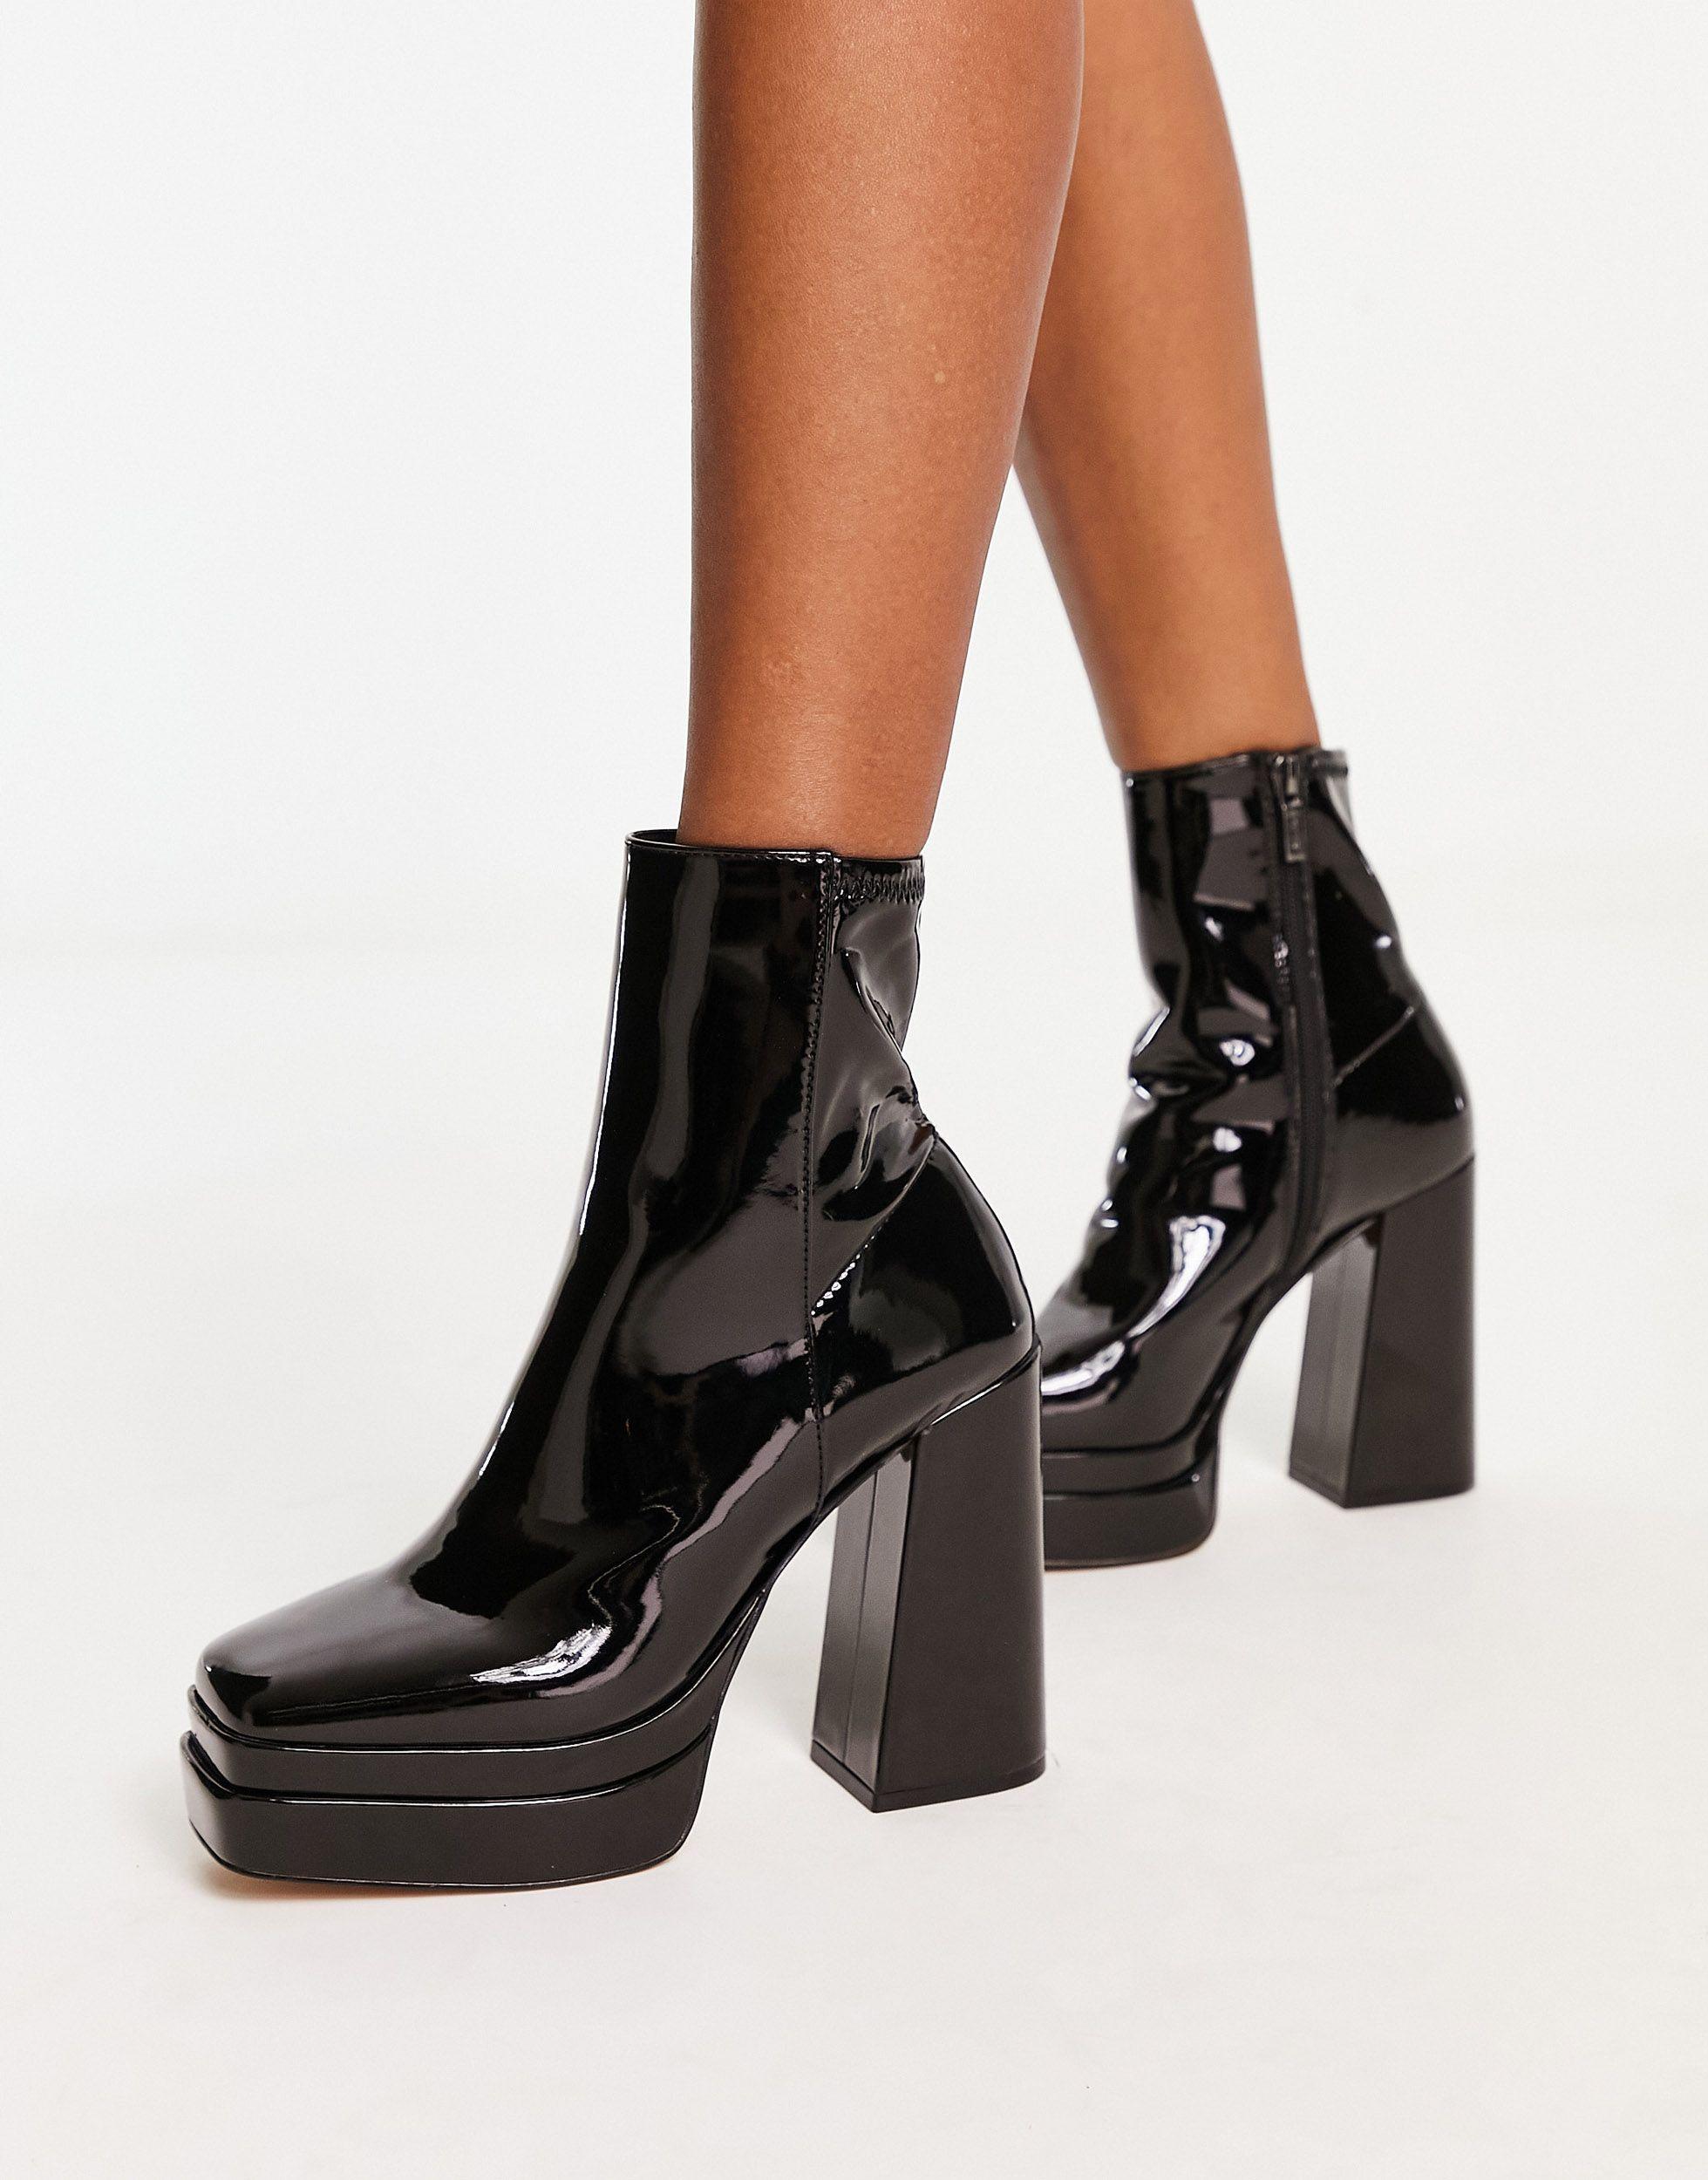 ALDO Mabel Square Toe Platform Heeled Boots in Black | Lyst